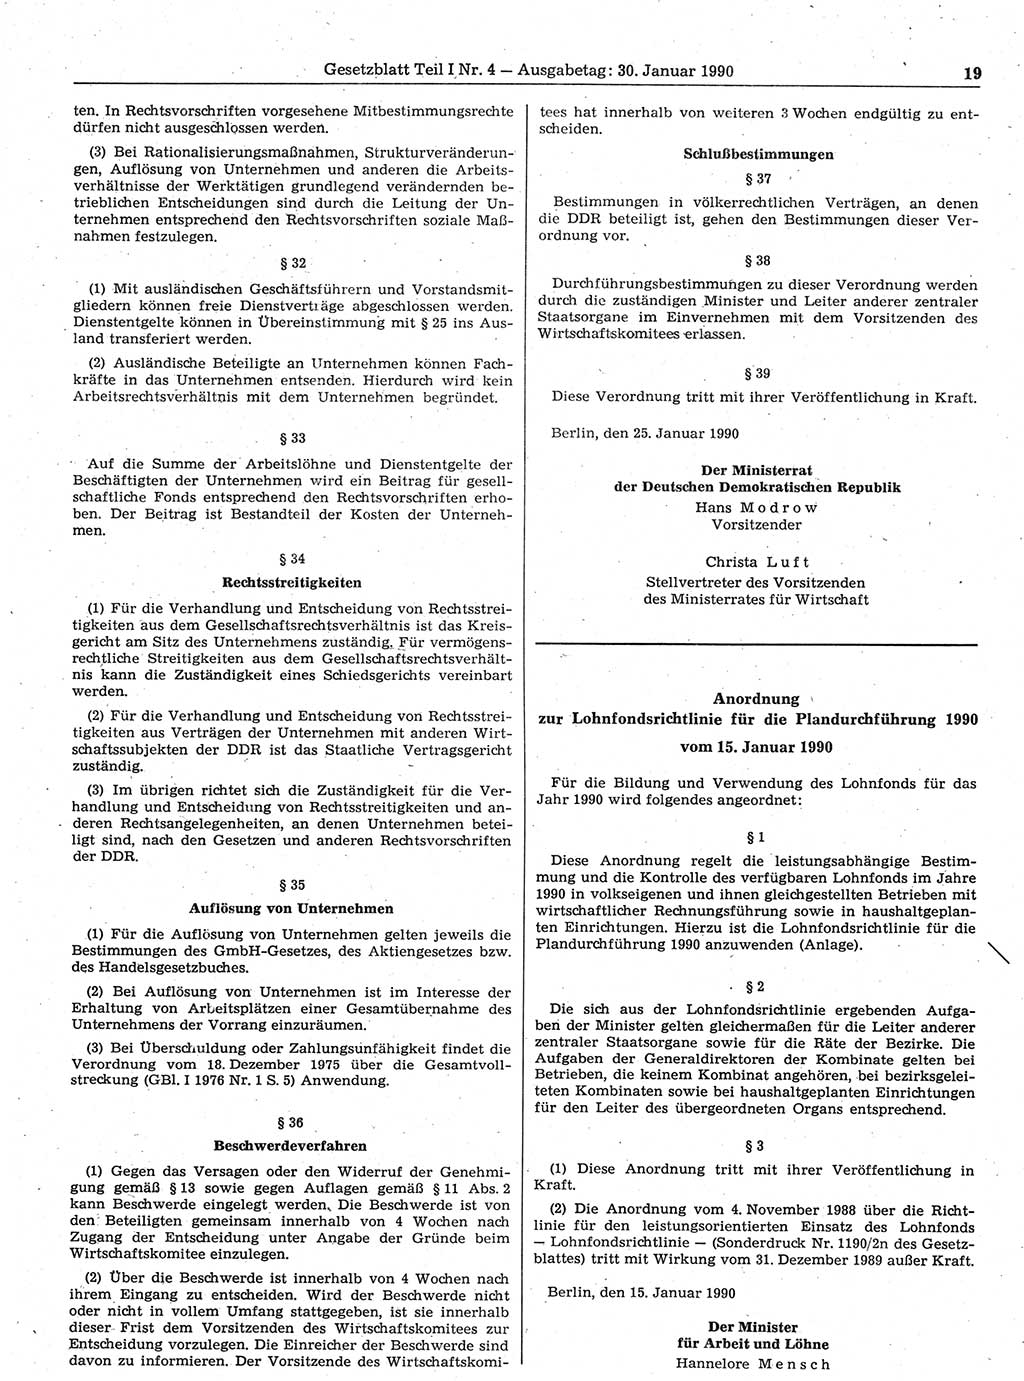 Gesetzblatt (GBl.) der Deutschen Demokratischen Republik (DDR) Teil Ⅰ 1990, Seite 19 (GBl. DDR Ⅰ 1990, S. 19)